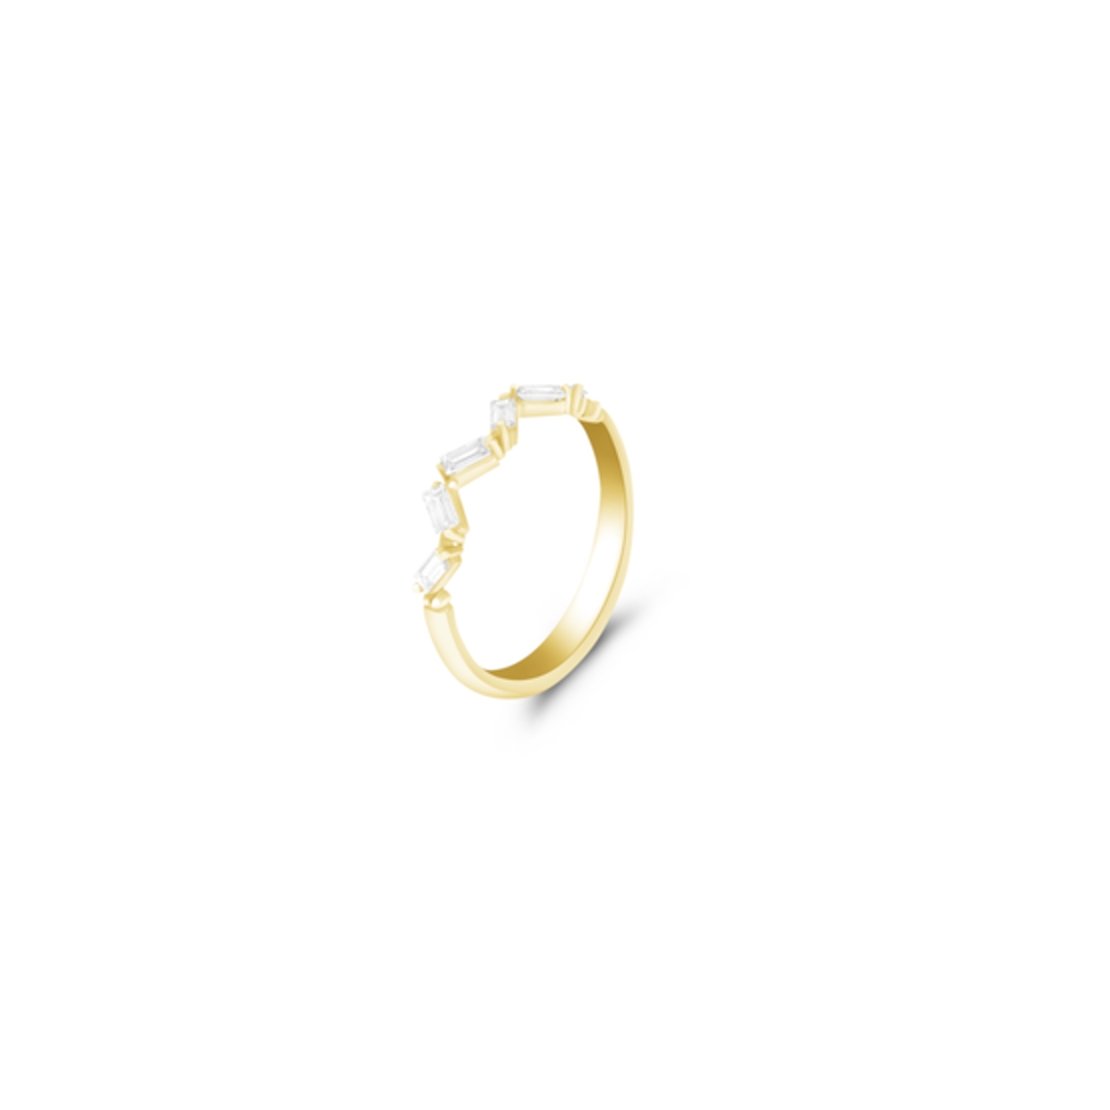 Ziv Diamond Ring